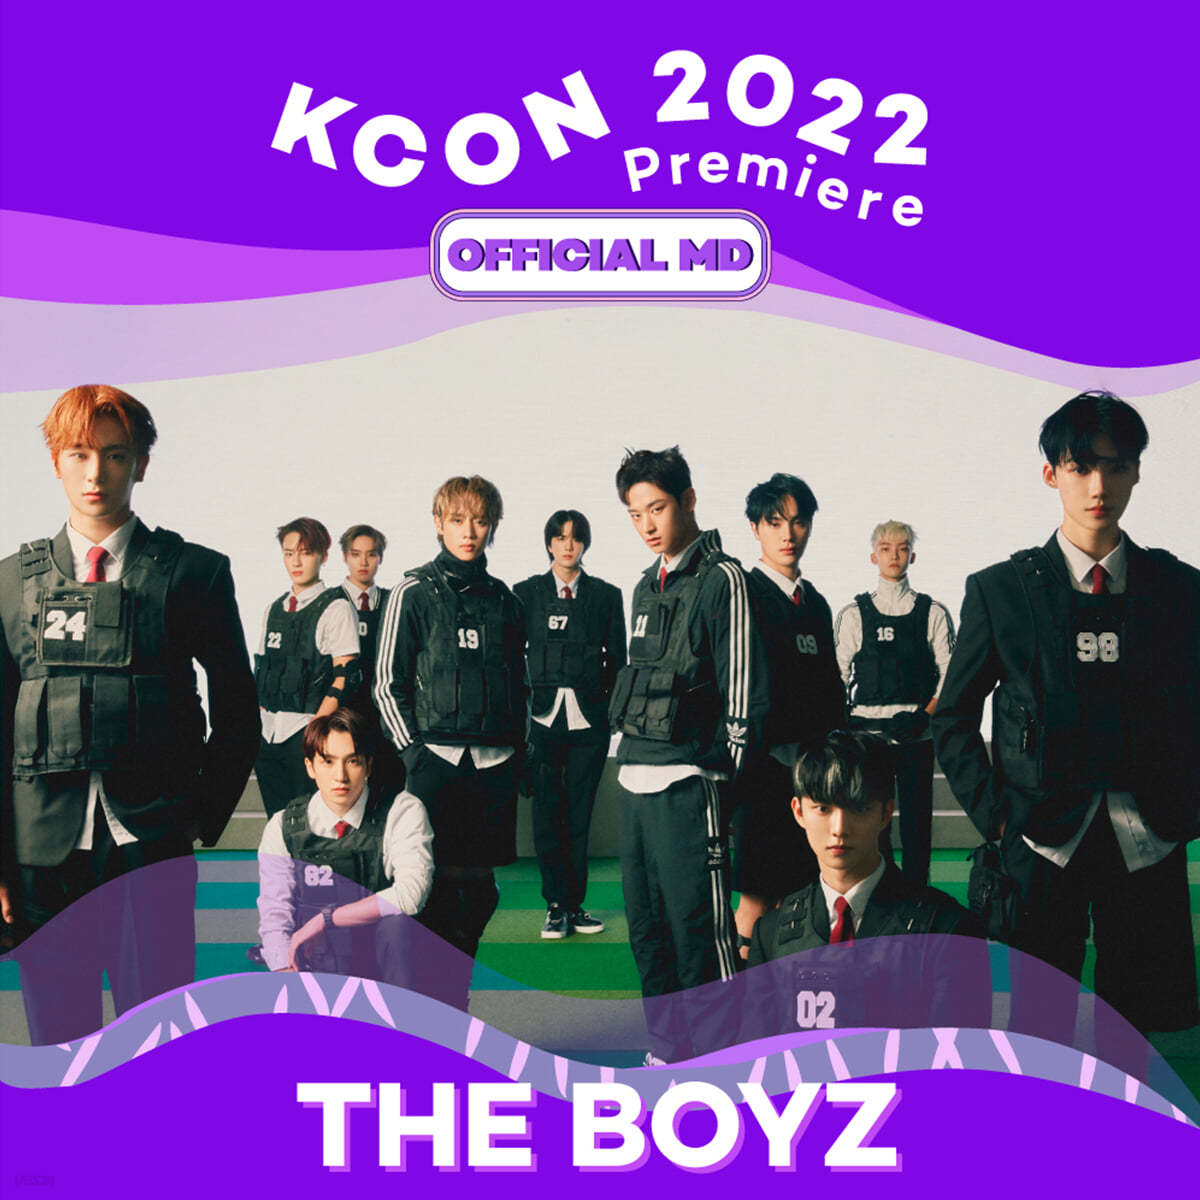 더보이즈 (The Boyz) - KCON archive moment